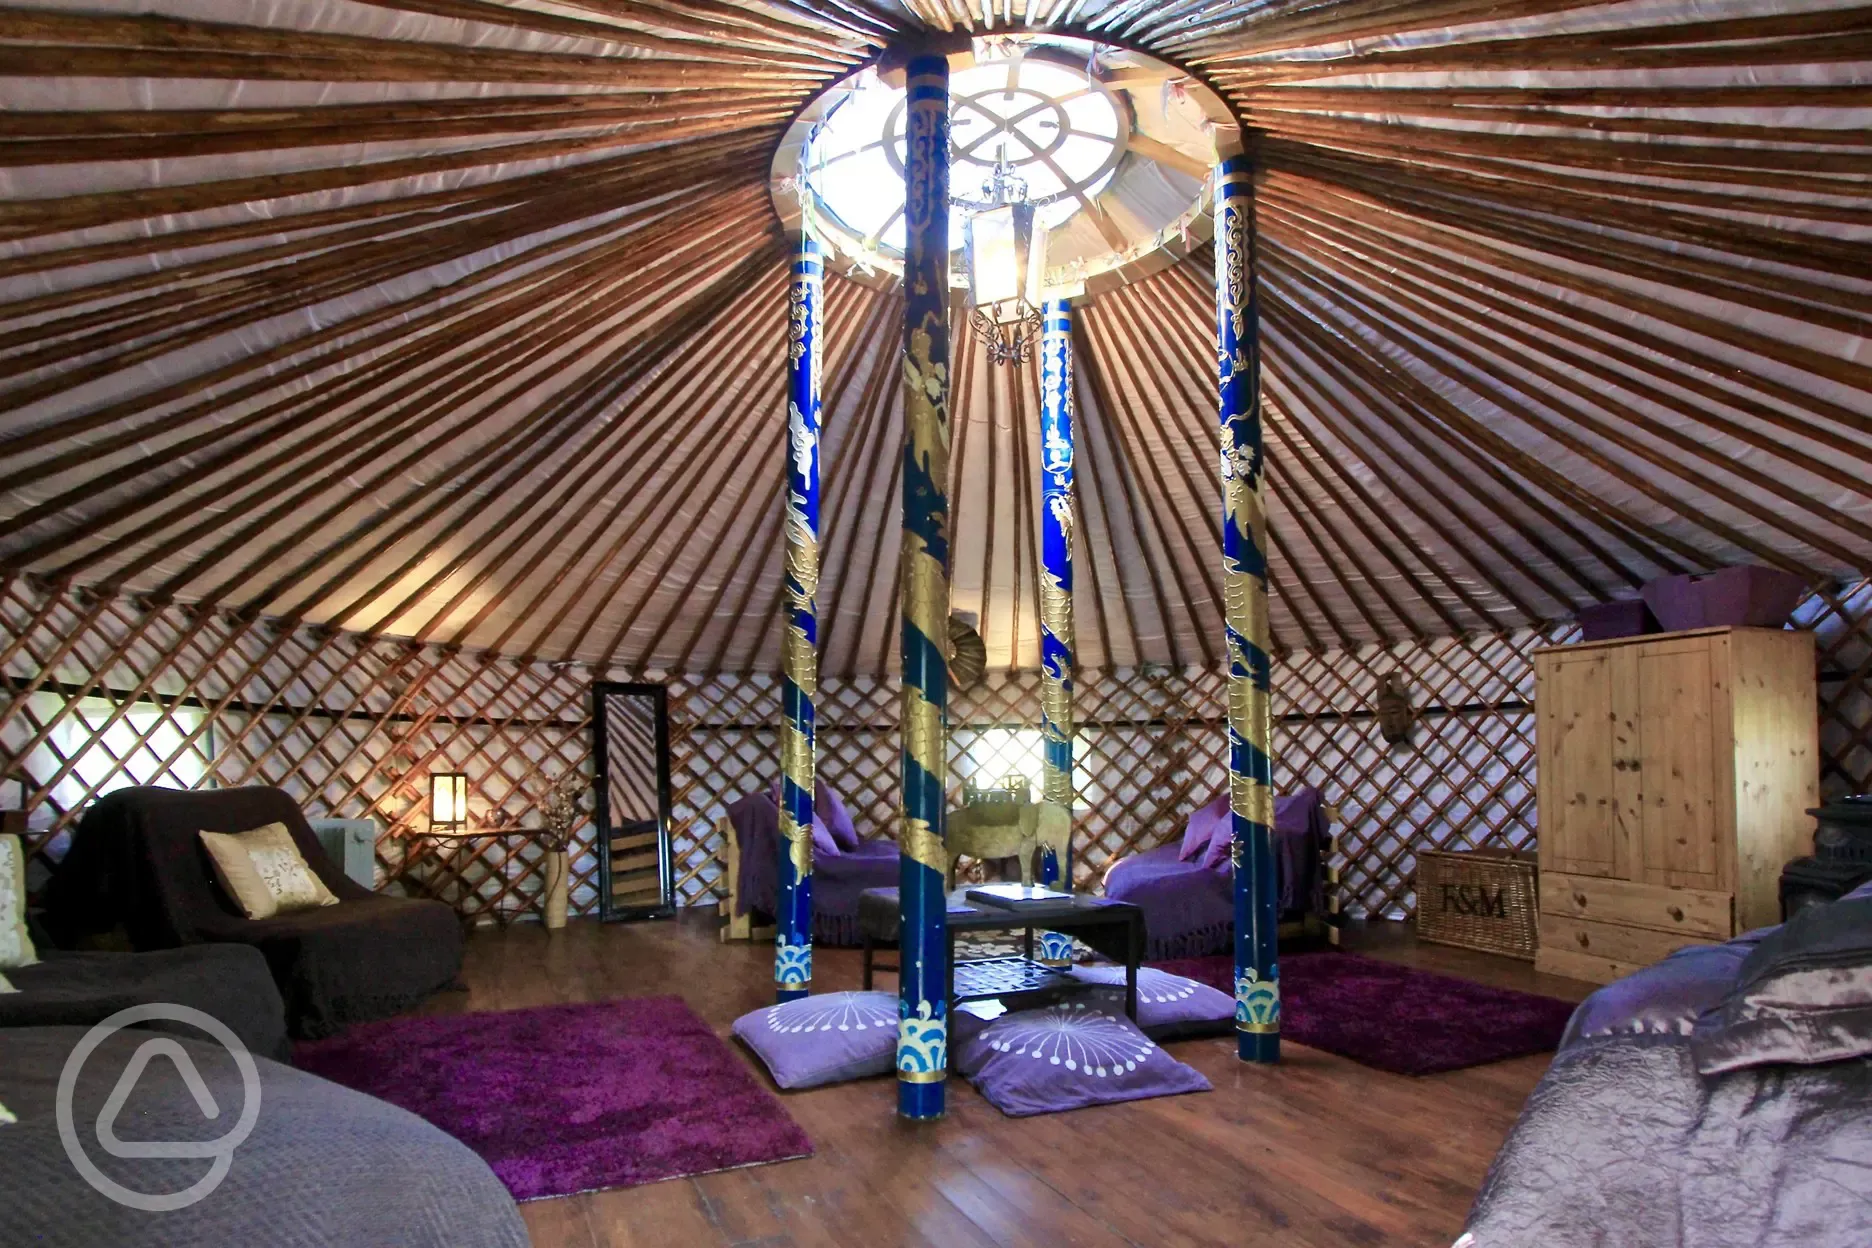 Bramble yurt interior